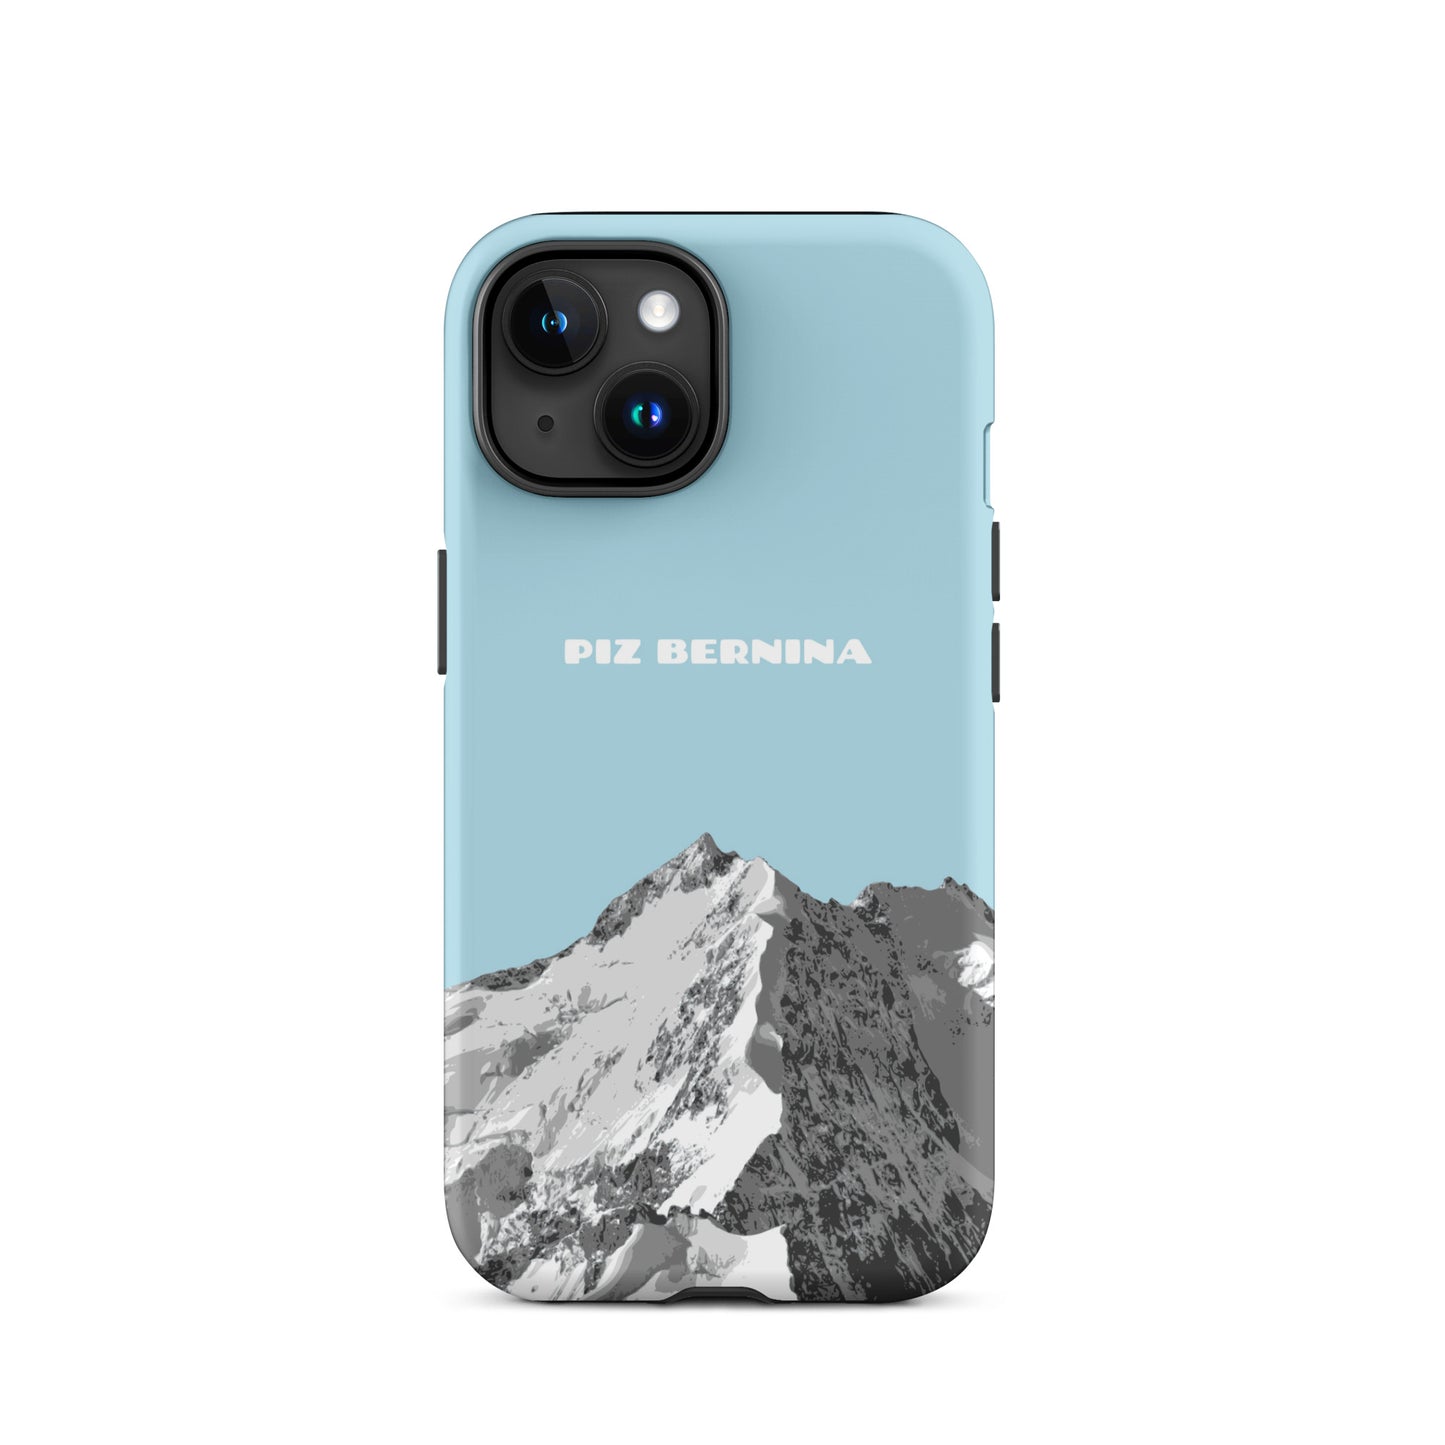 Hülle für das iPhone 15 von Apple in der Farbe Hellblau, dass den Piz Bernina in Graubünden zeigt.